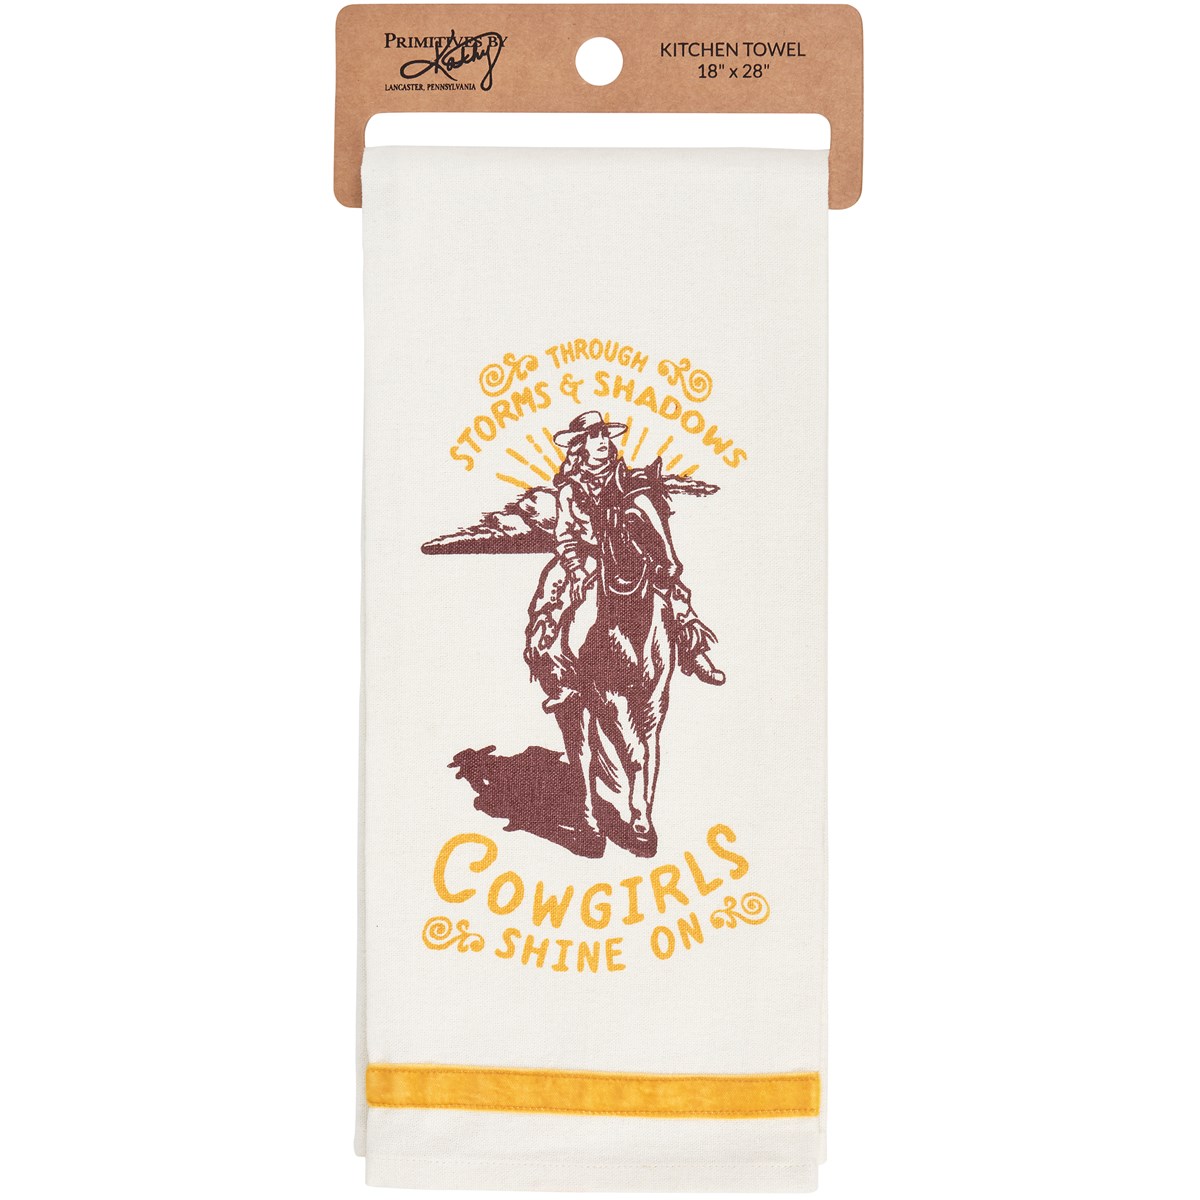 Cowgirls Kitchen Towel - Cotton, Velvet